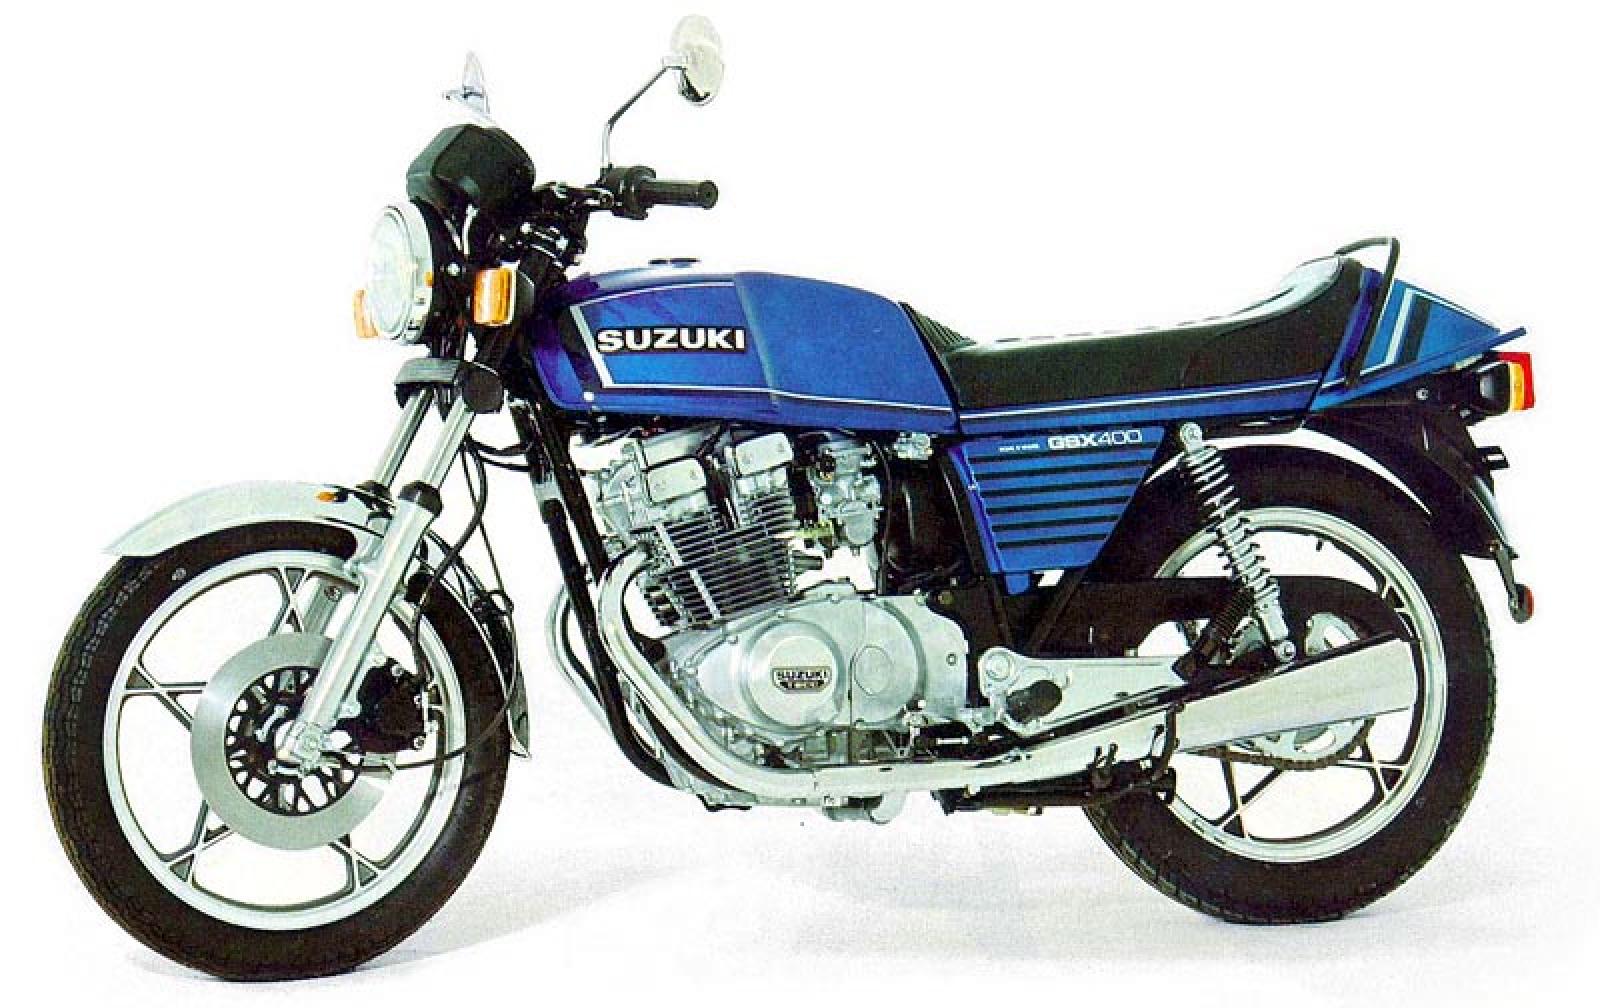 Suzuki GSX 400 1980 photo - 5